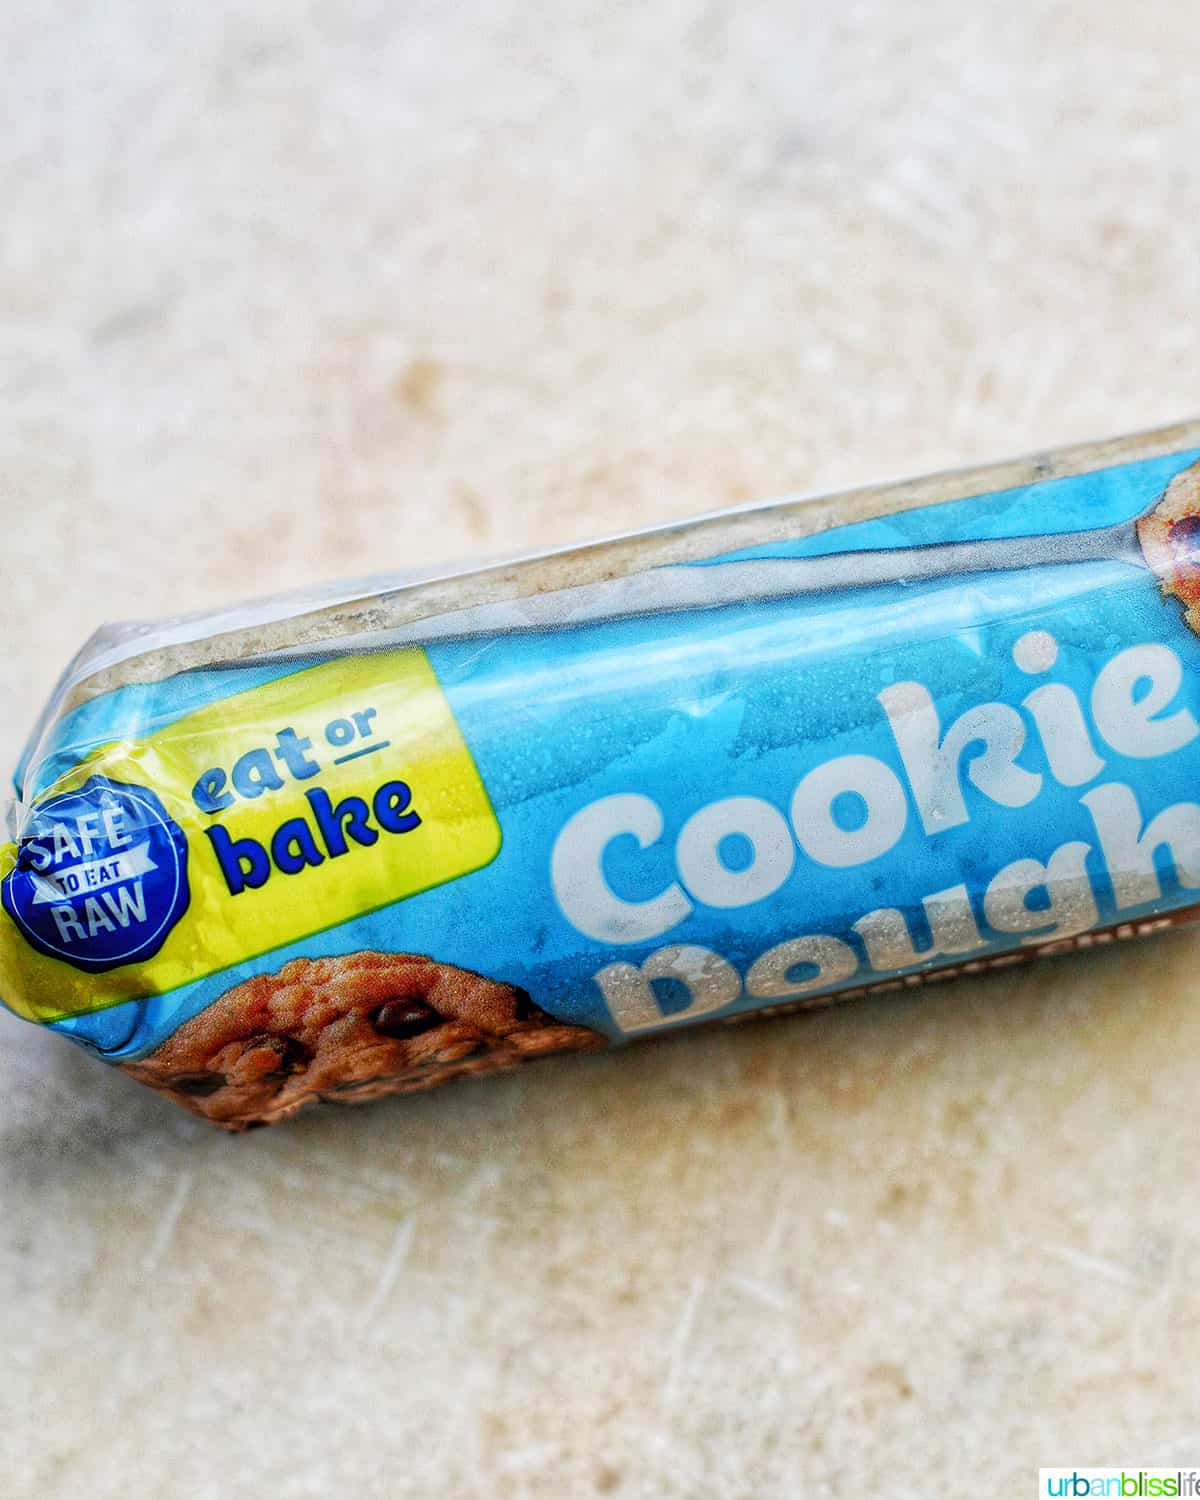 edible cookie dough in packaging